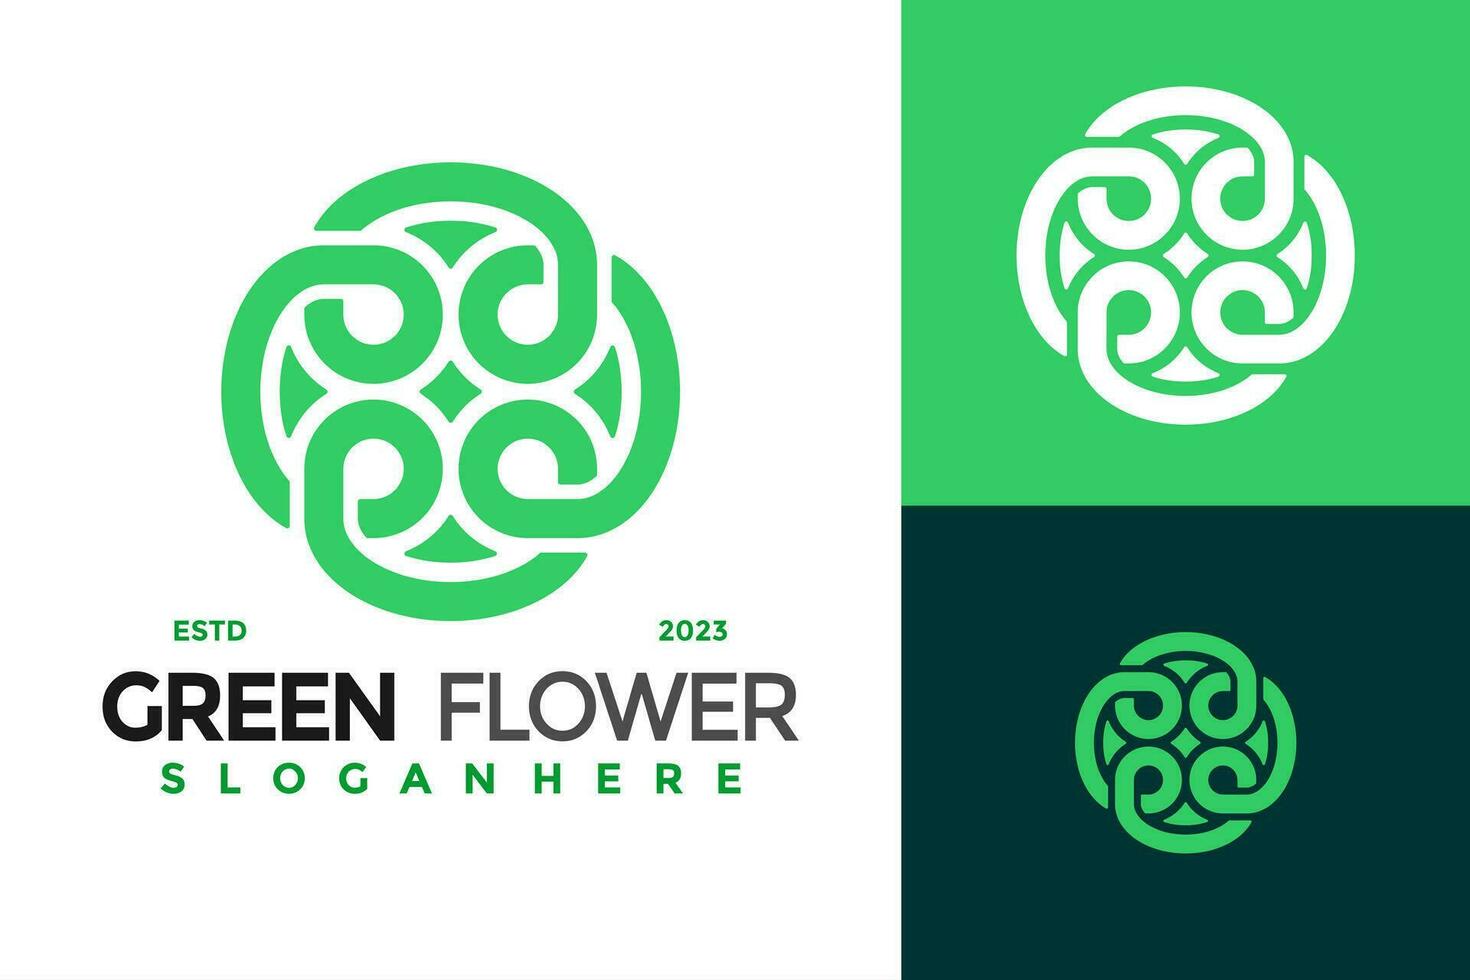 vert fleur logo conception vecteur symbole icône illustration